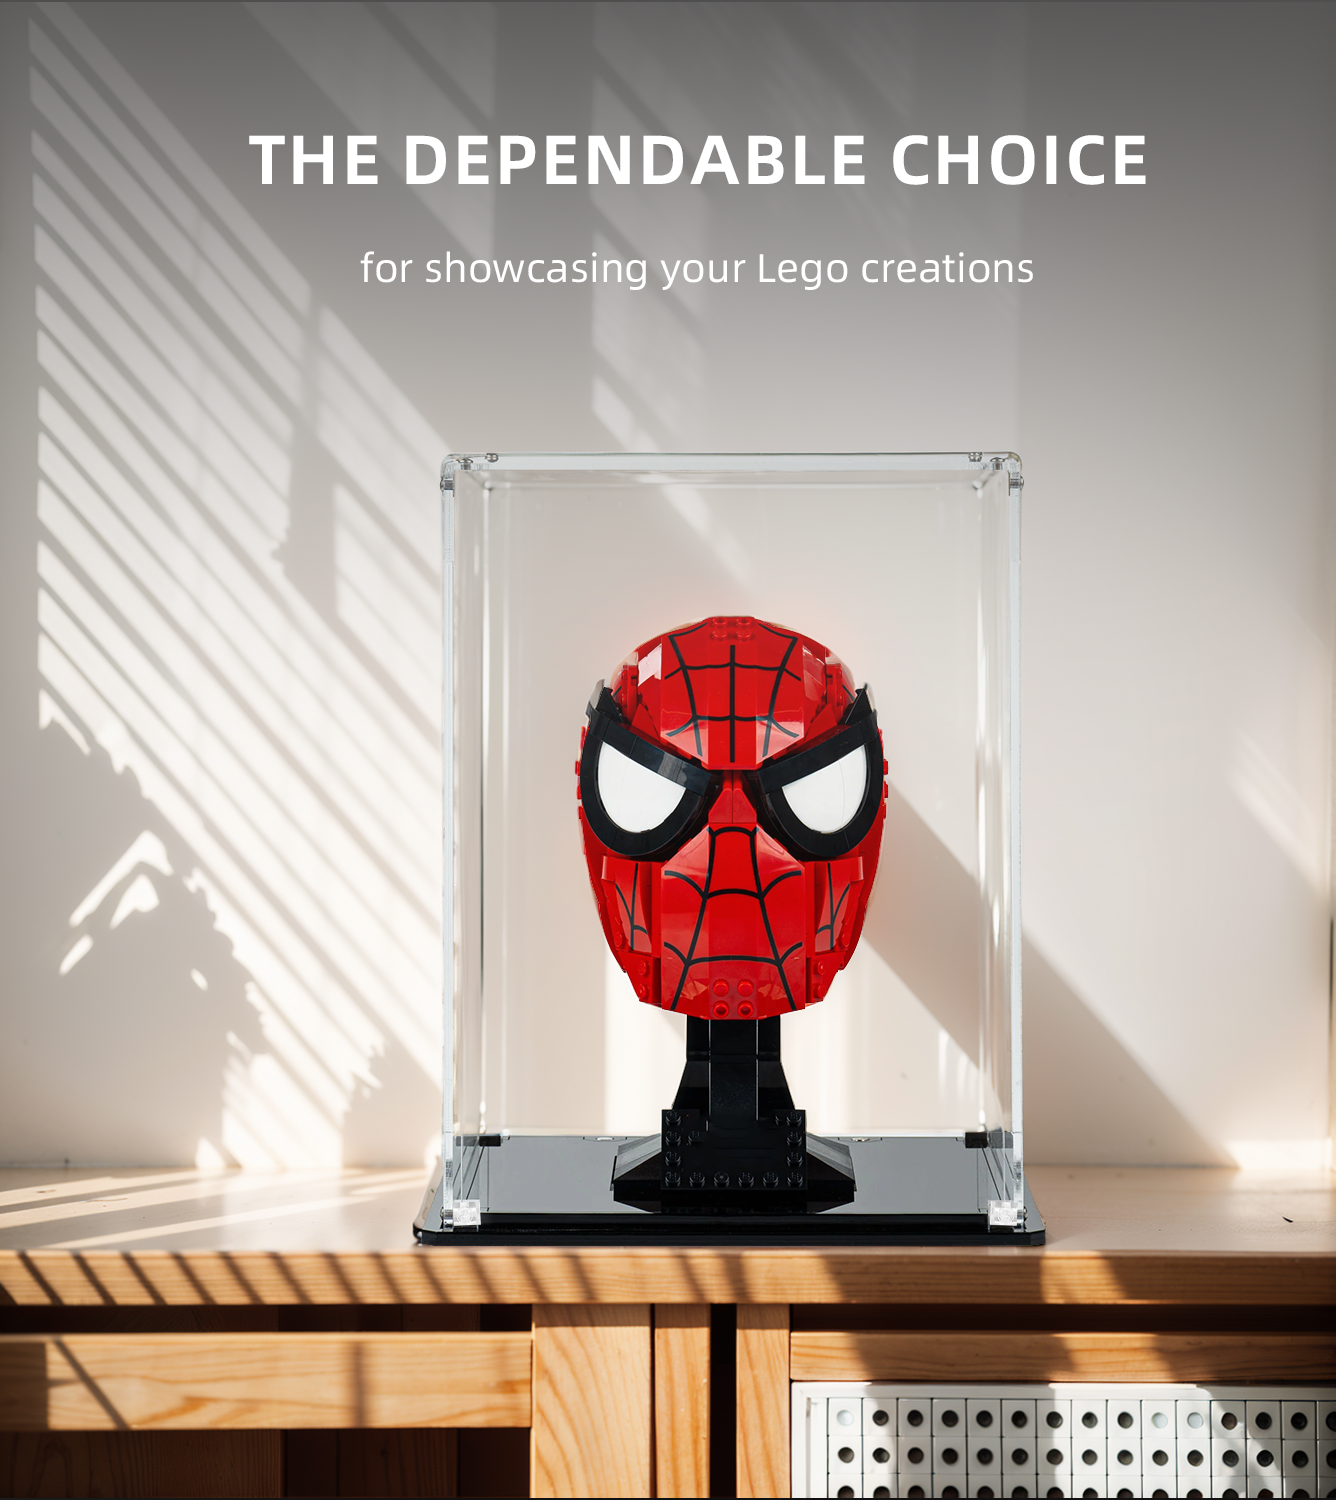 Display Case for Lego Marvel Spider-Man's Mask 76285